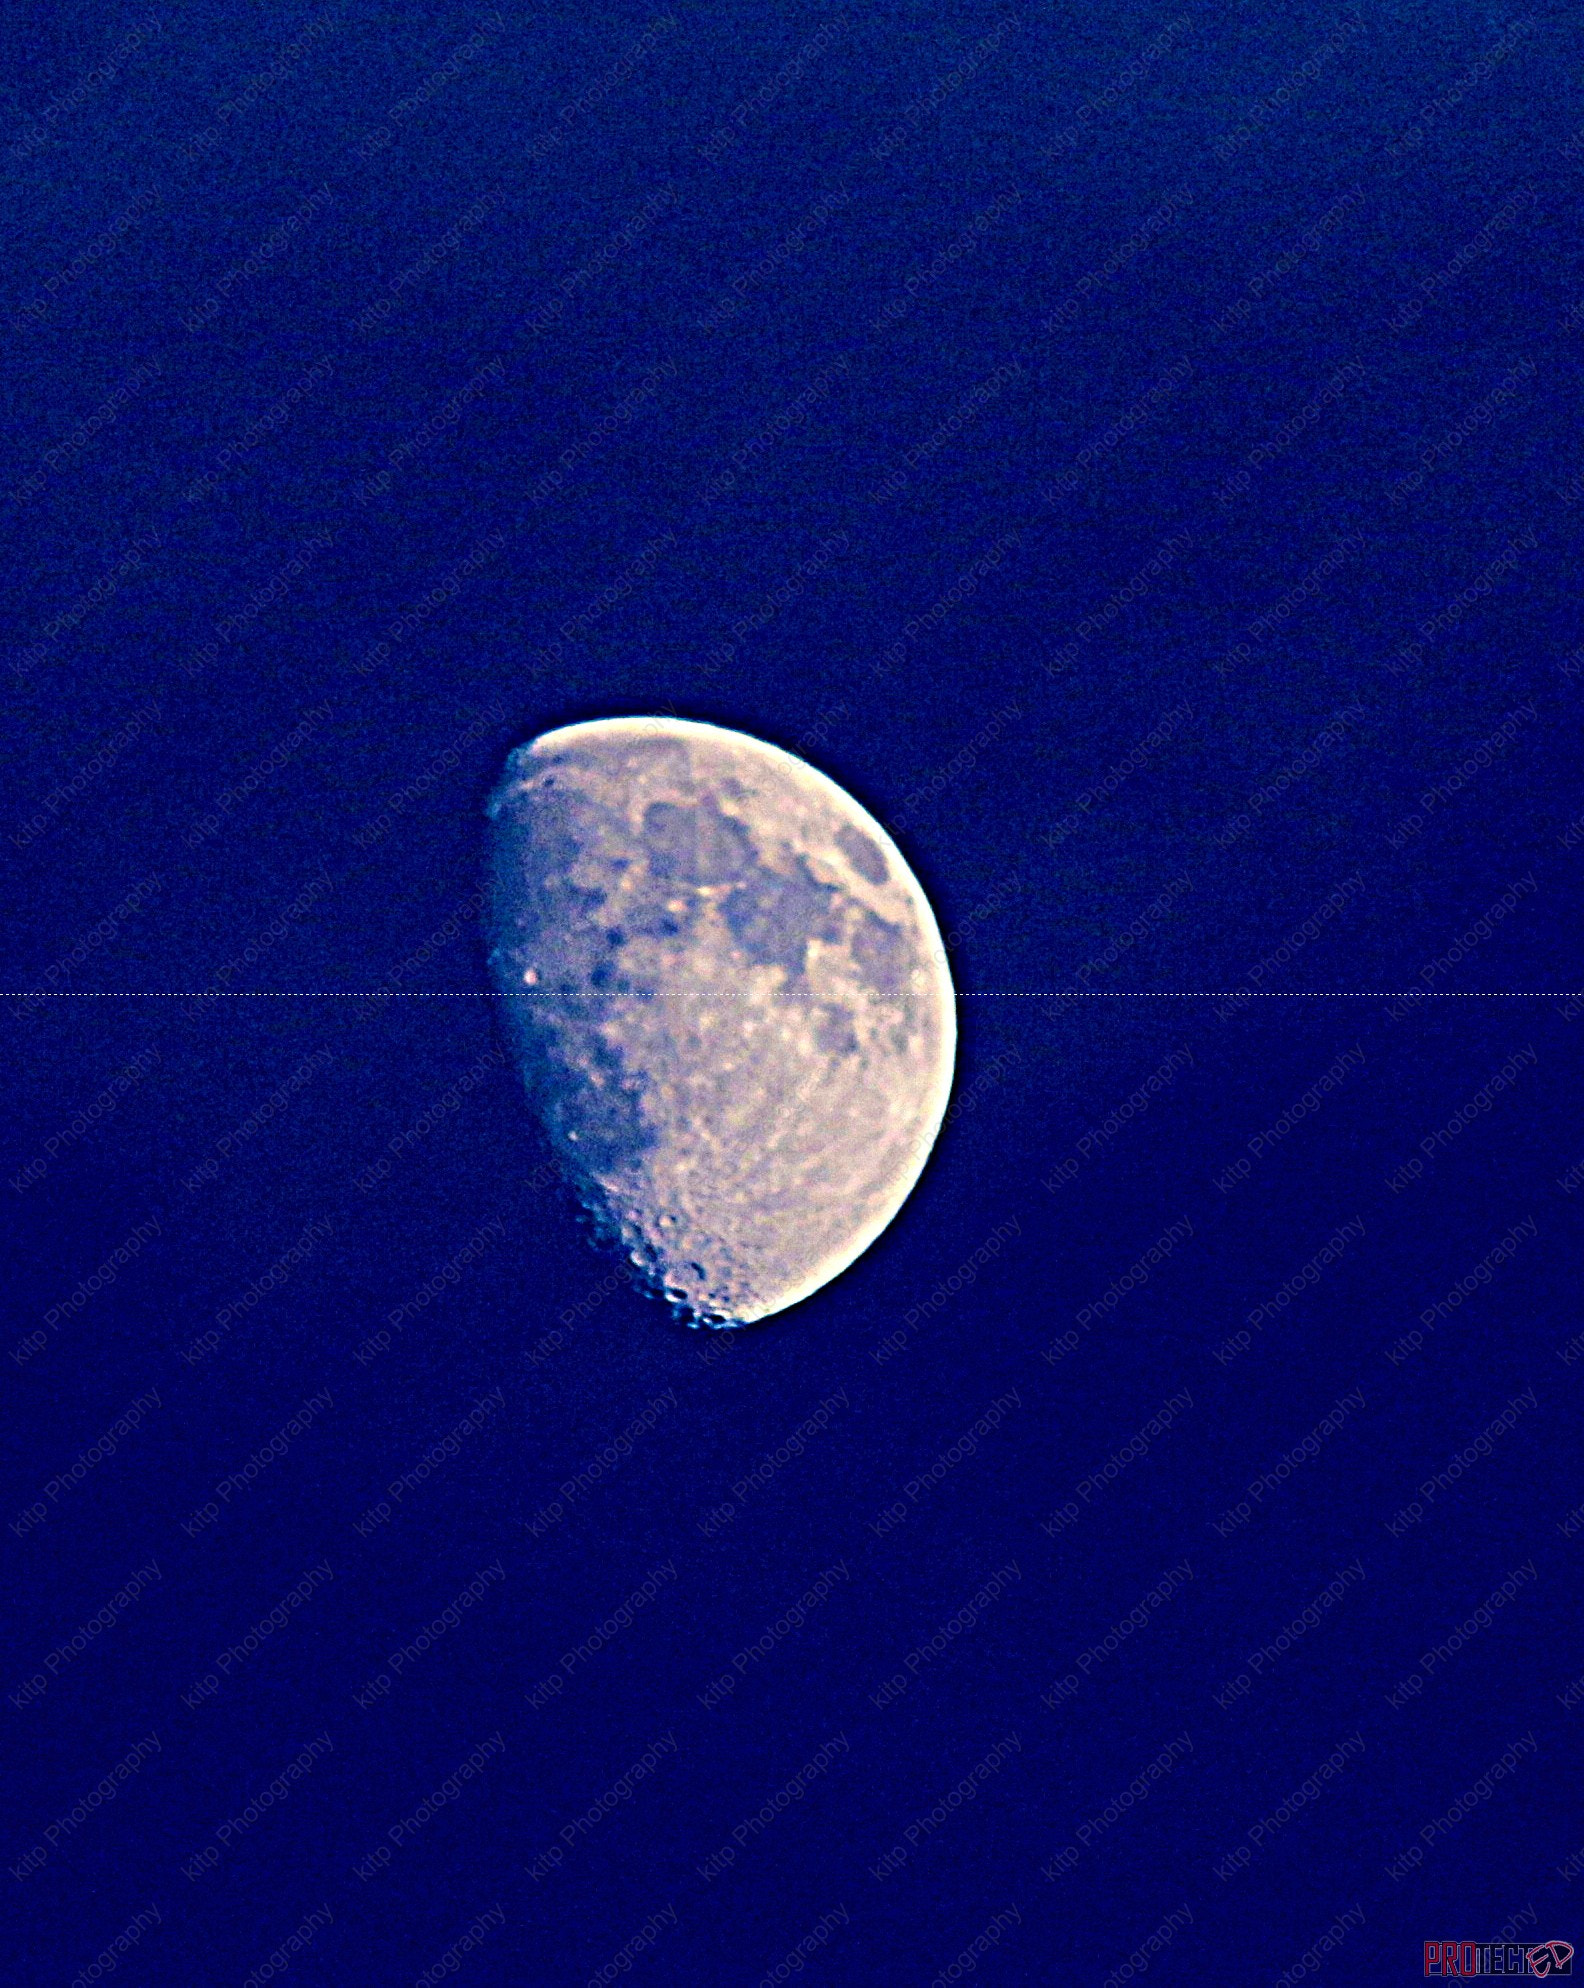 Canon EOS 7D Mark II sample photo. Blue sky moon photography